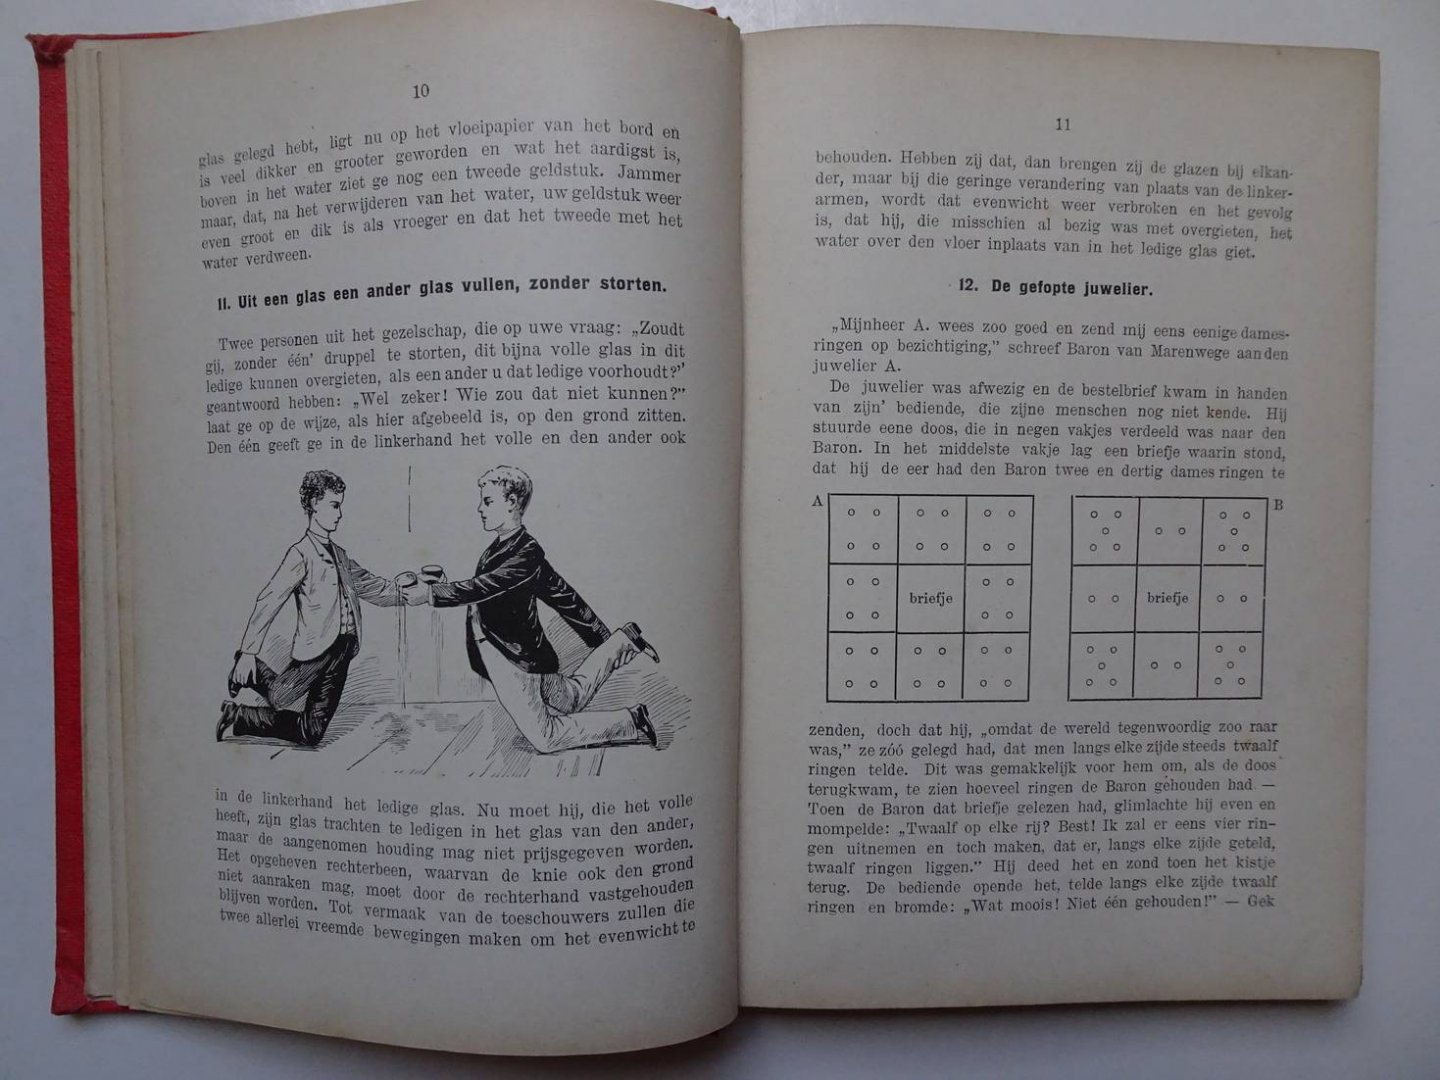 Louwerse, P. - Geillustreerd Uitspanningsboek voor jongens en meisjes.